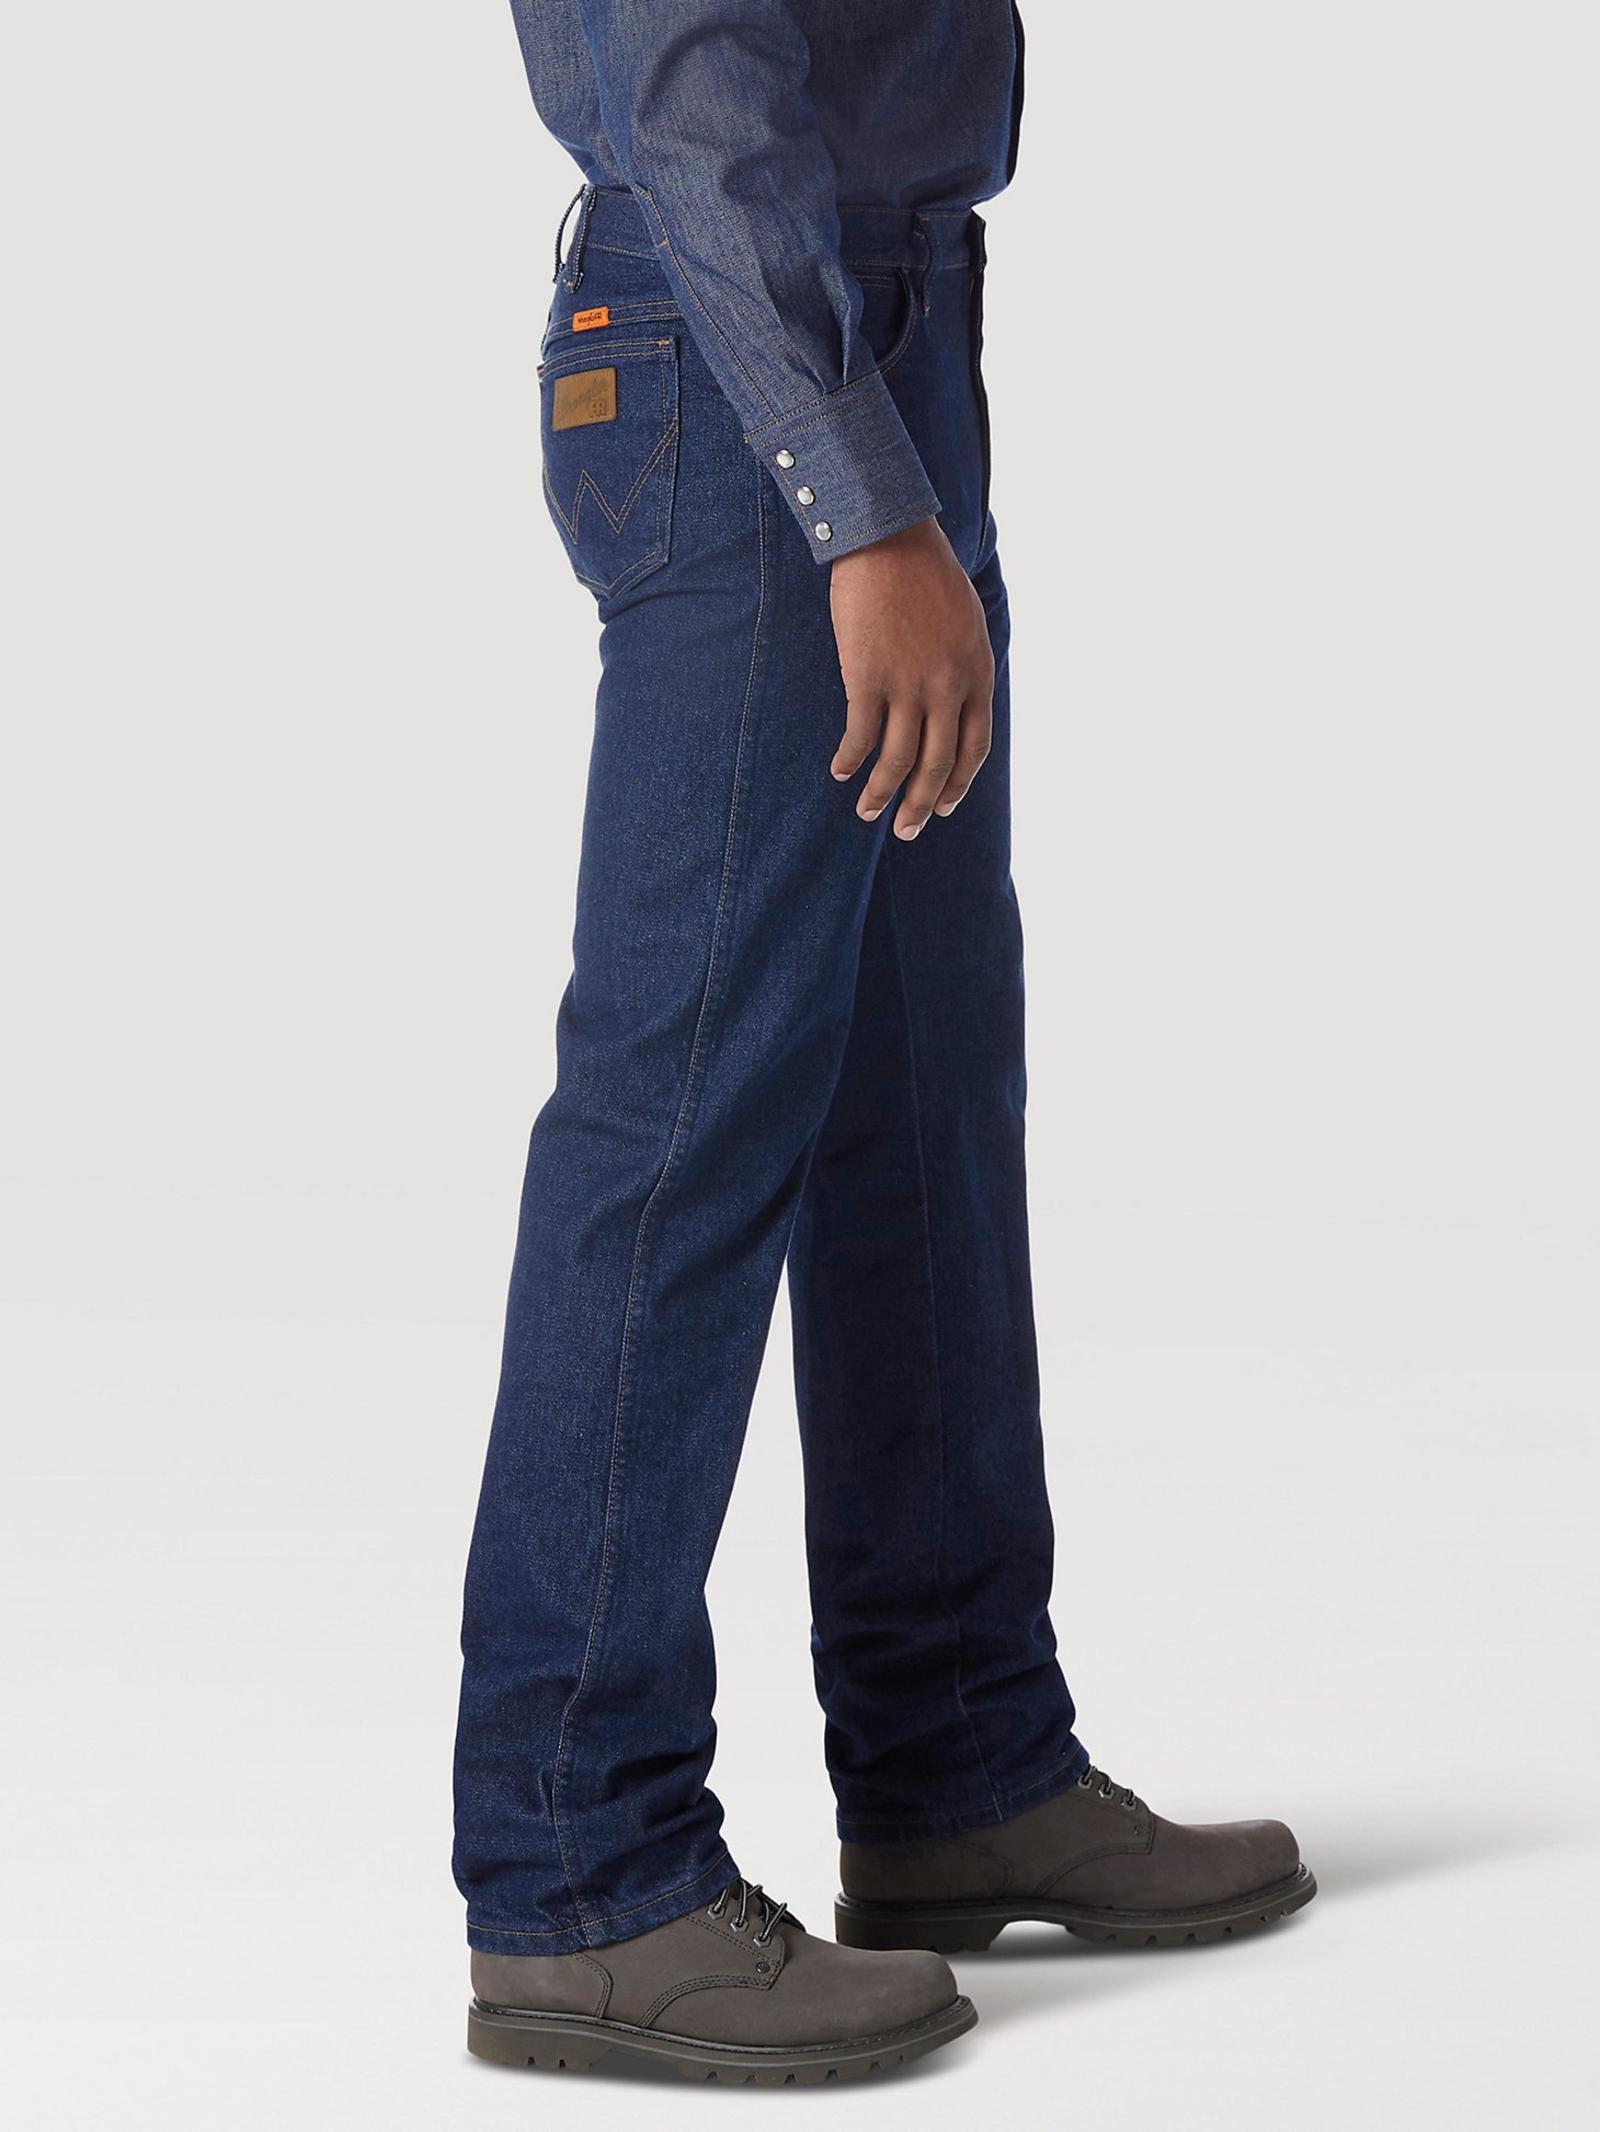 Wrangler FR Flame Resistant Original Fit Jean